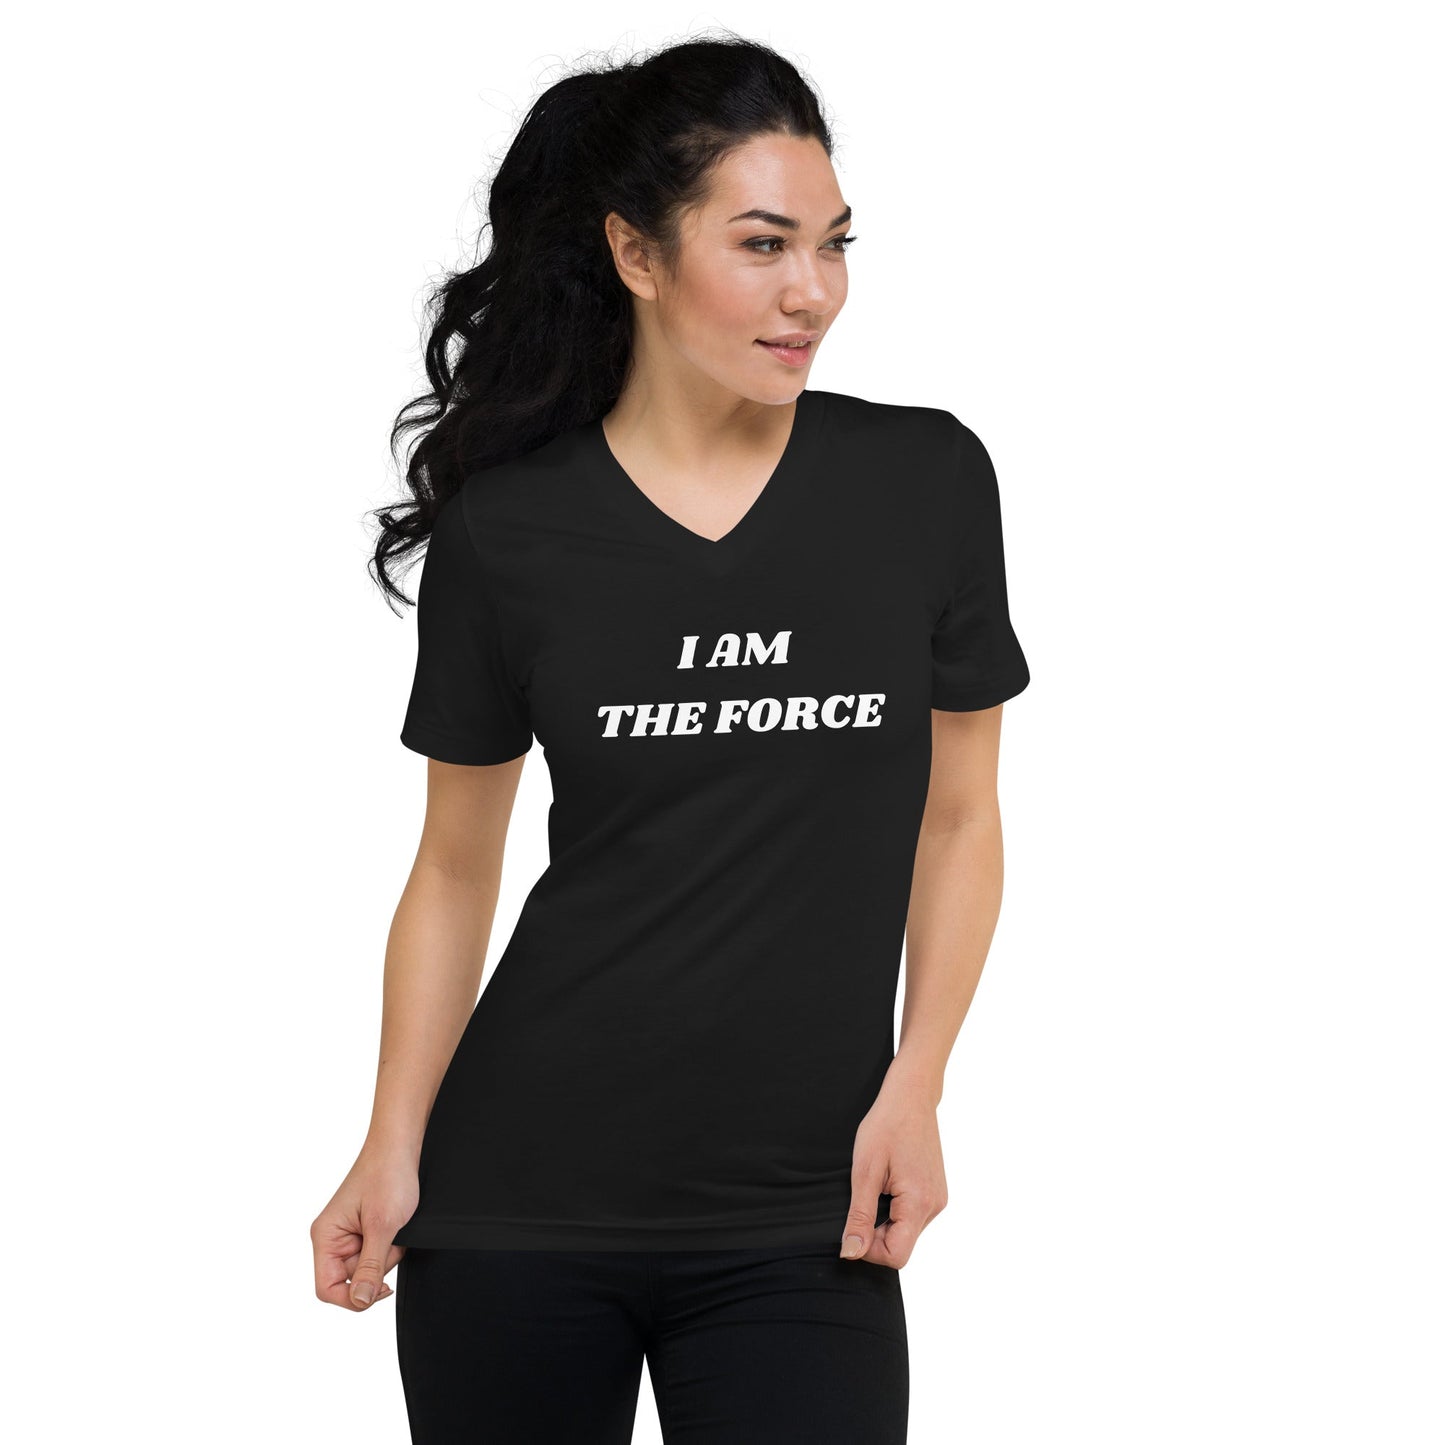 I AM THE FORCE | Unisex Short Sleeve V - Neck T - Shirt